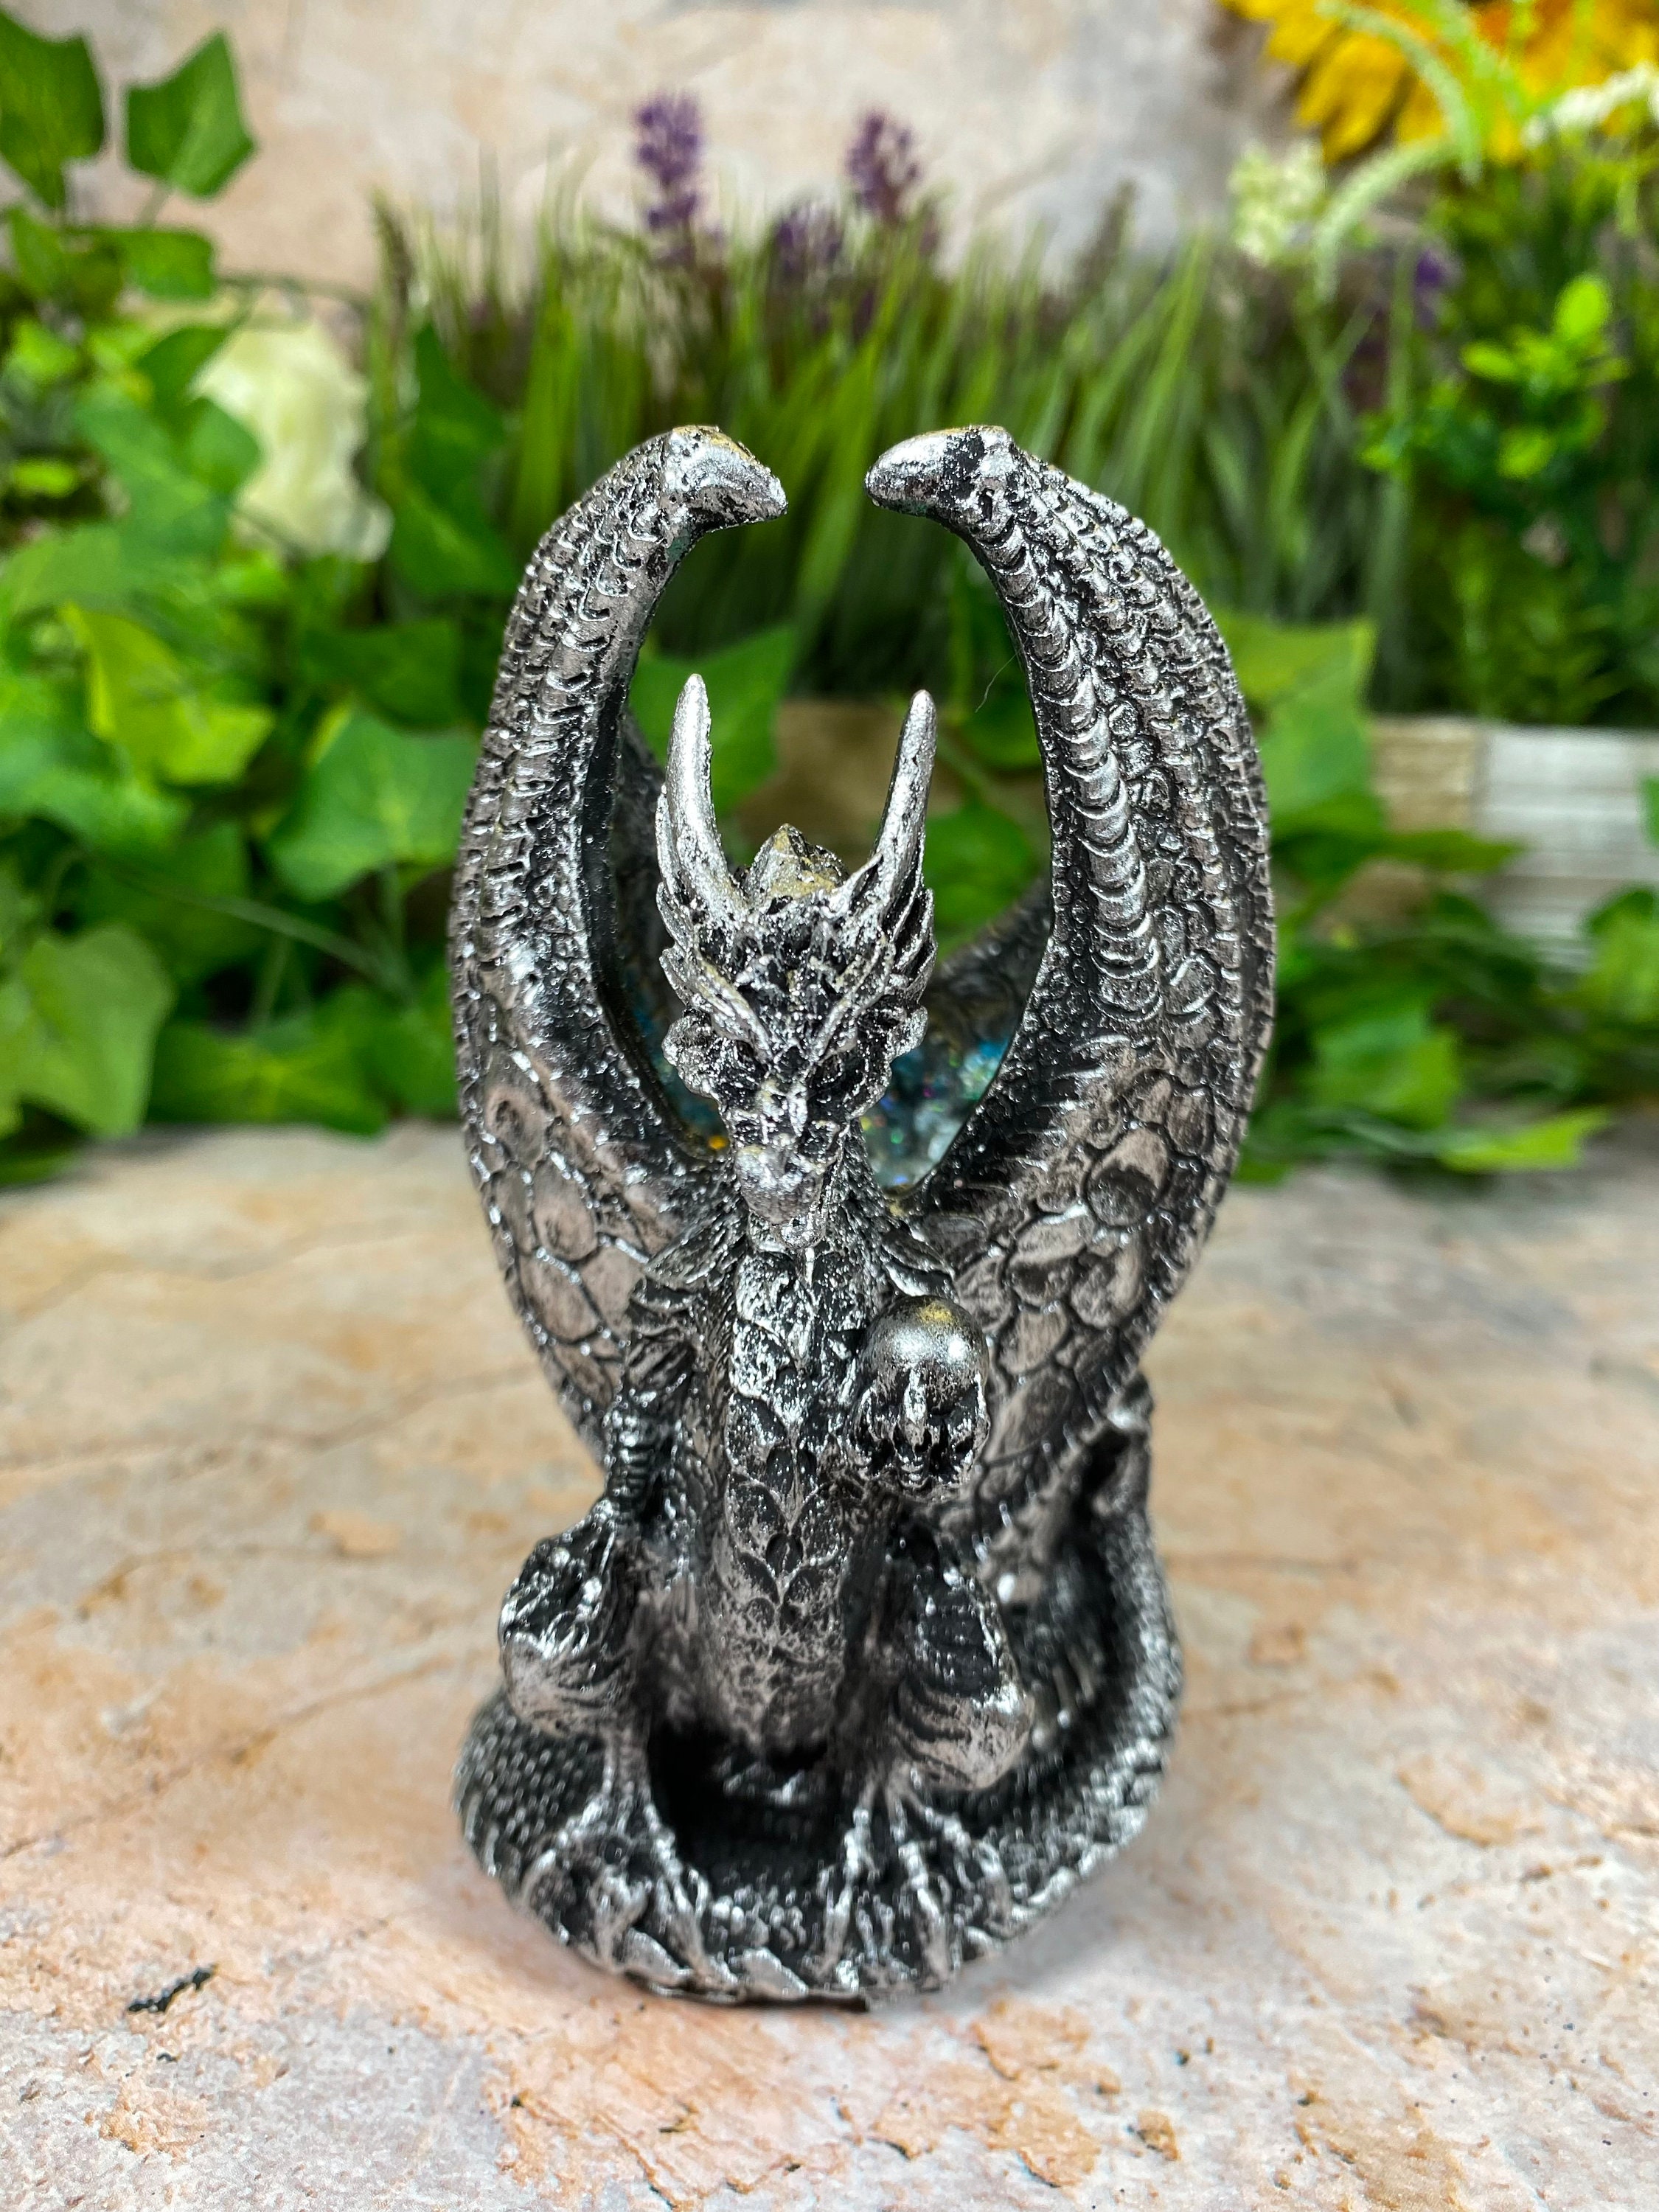 Statue deco,Sculpture de tête de Dragon Legend 3D, lumière LED